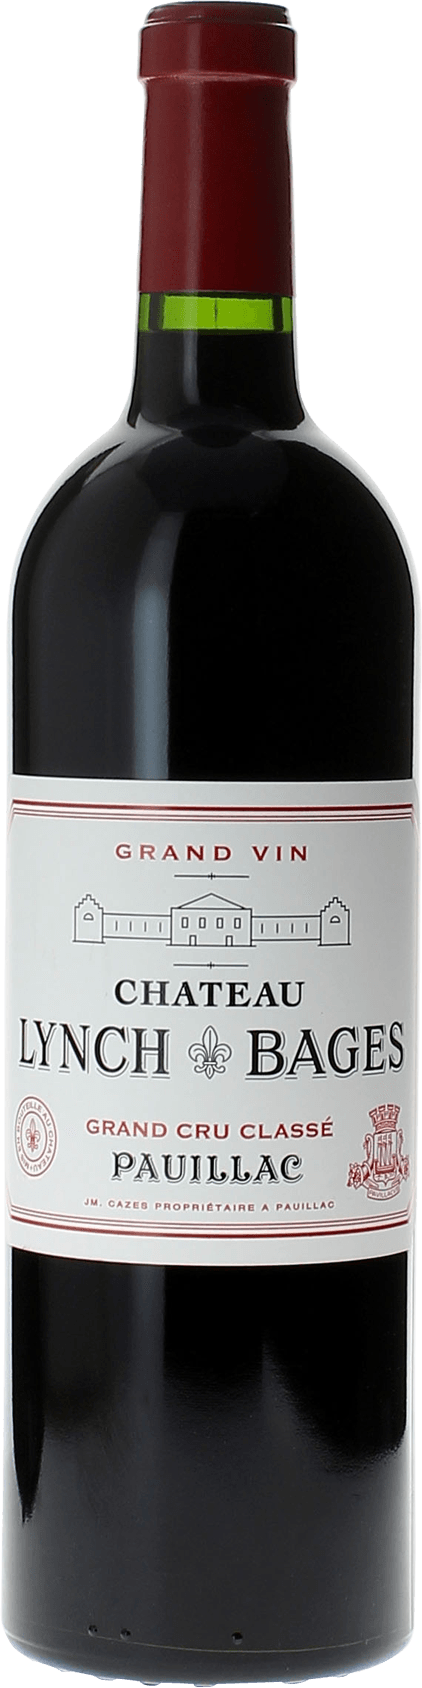 Lynch bages 2017 5 me Grand cru class Pauillac, Bordeaux rouge